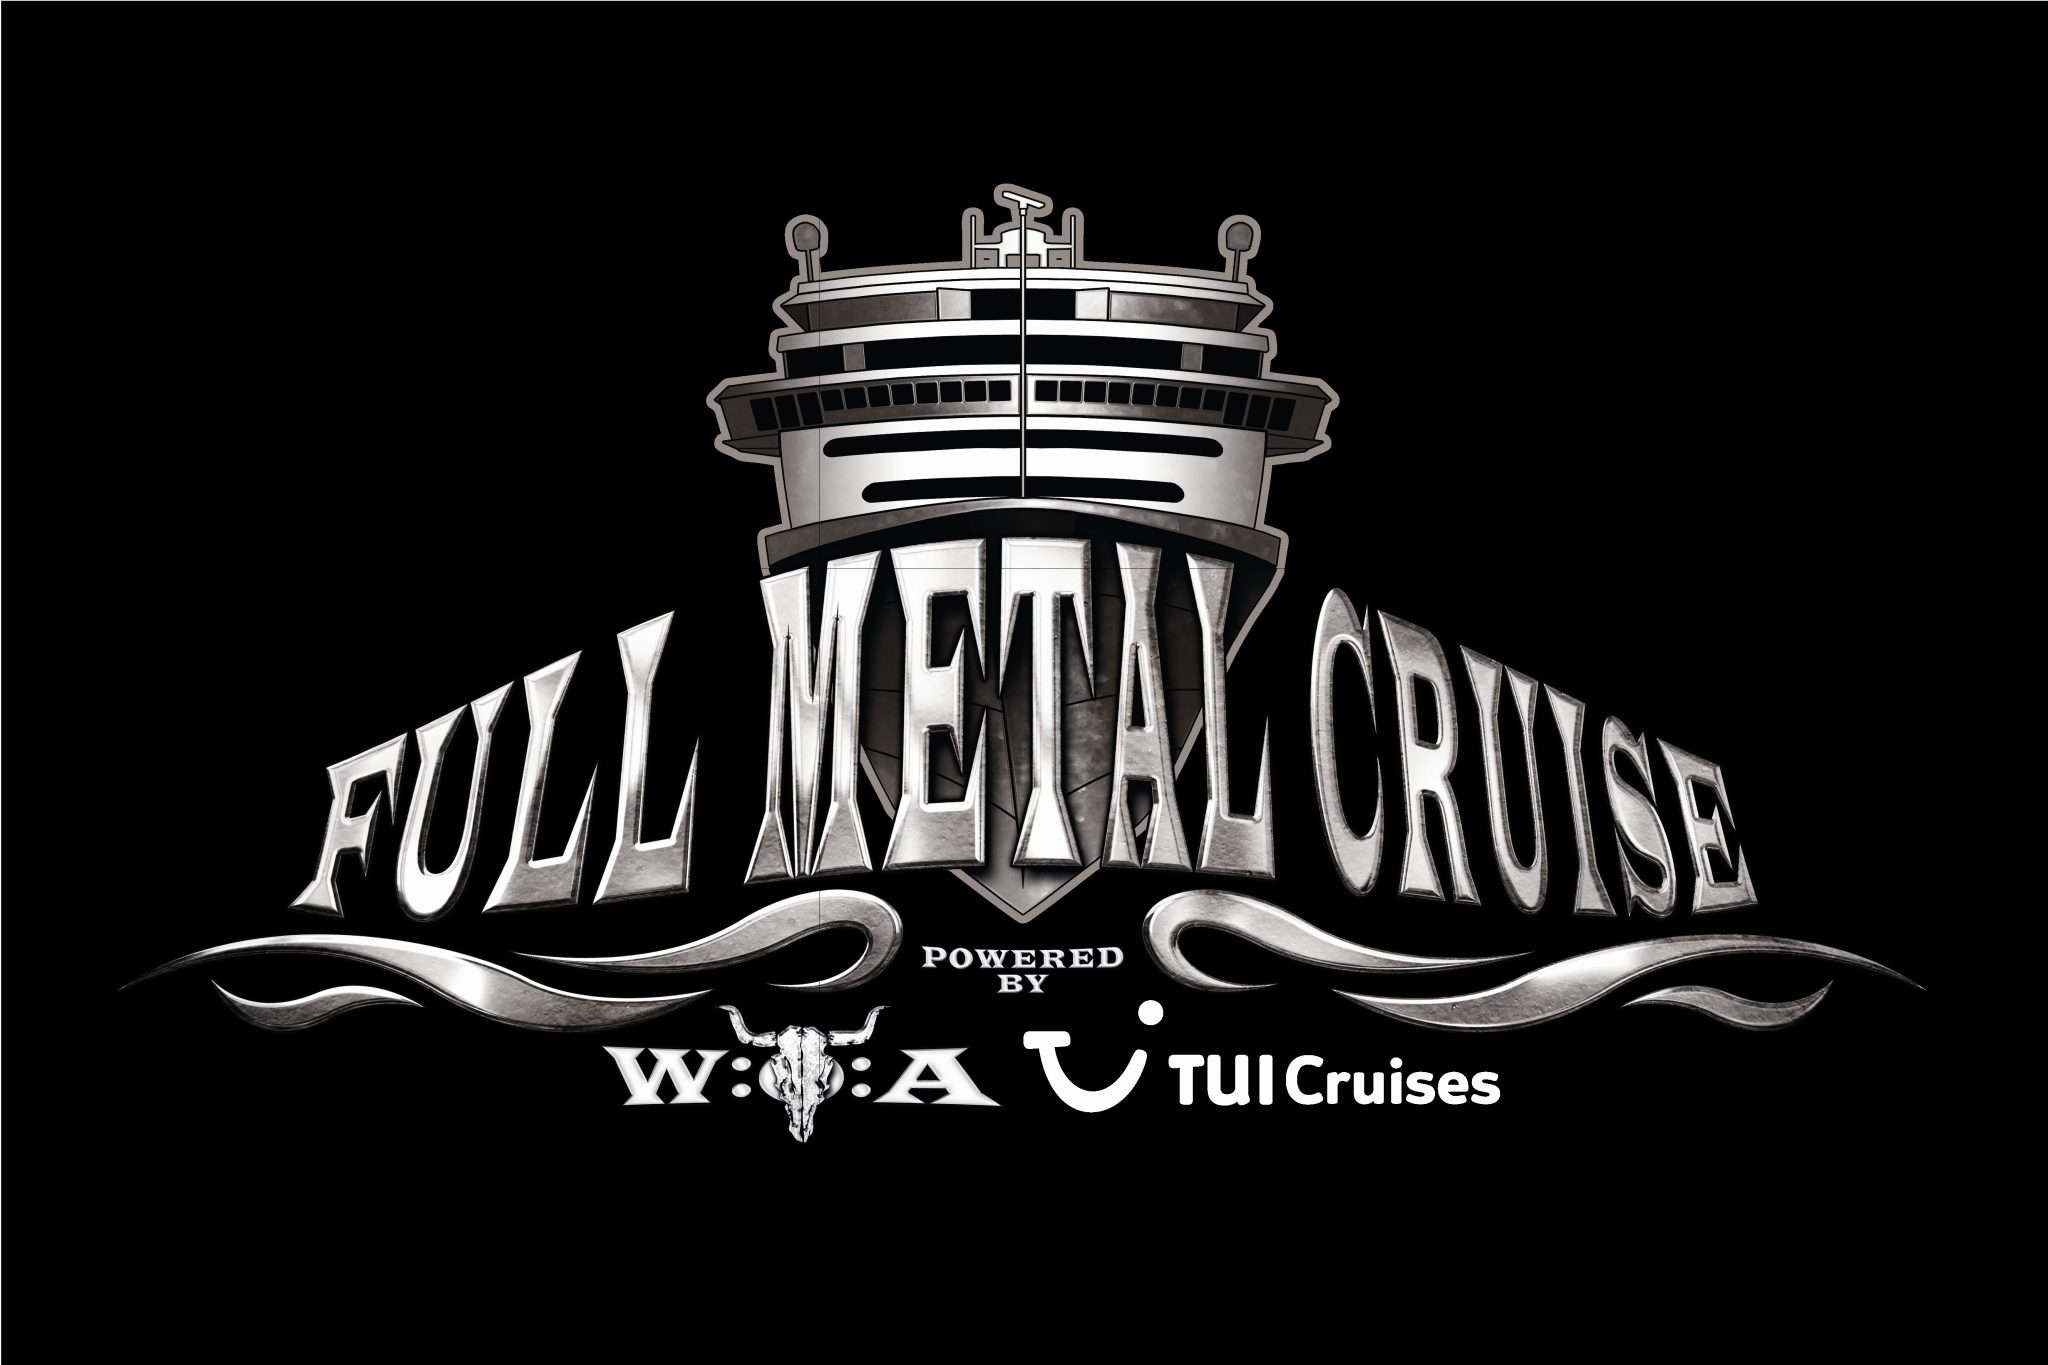 Schneller, härter, Full Metal Cruise III – Europas größtes Heavy-Metal-Festival auf See nach einer Stunde ausgebucht